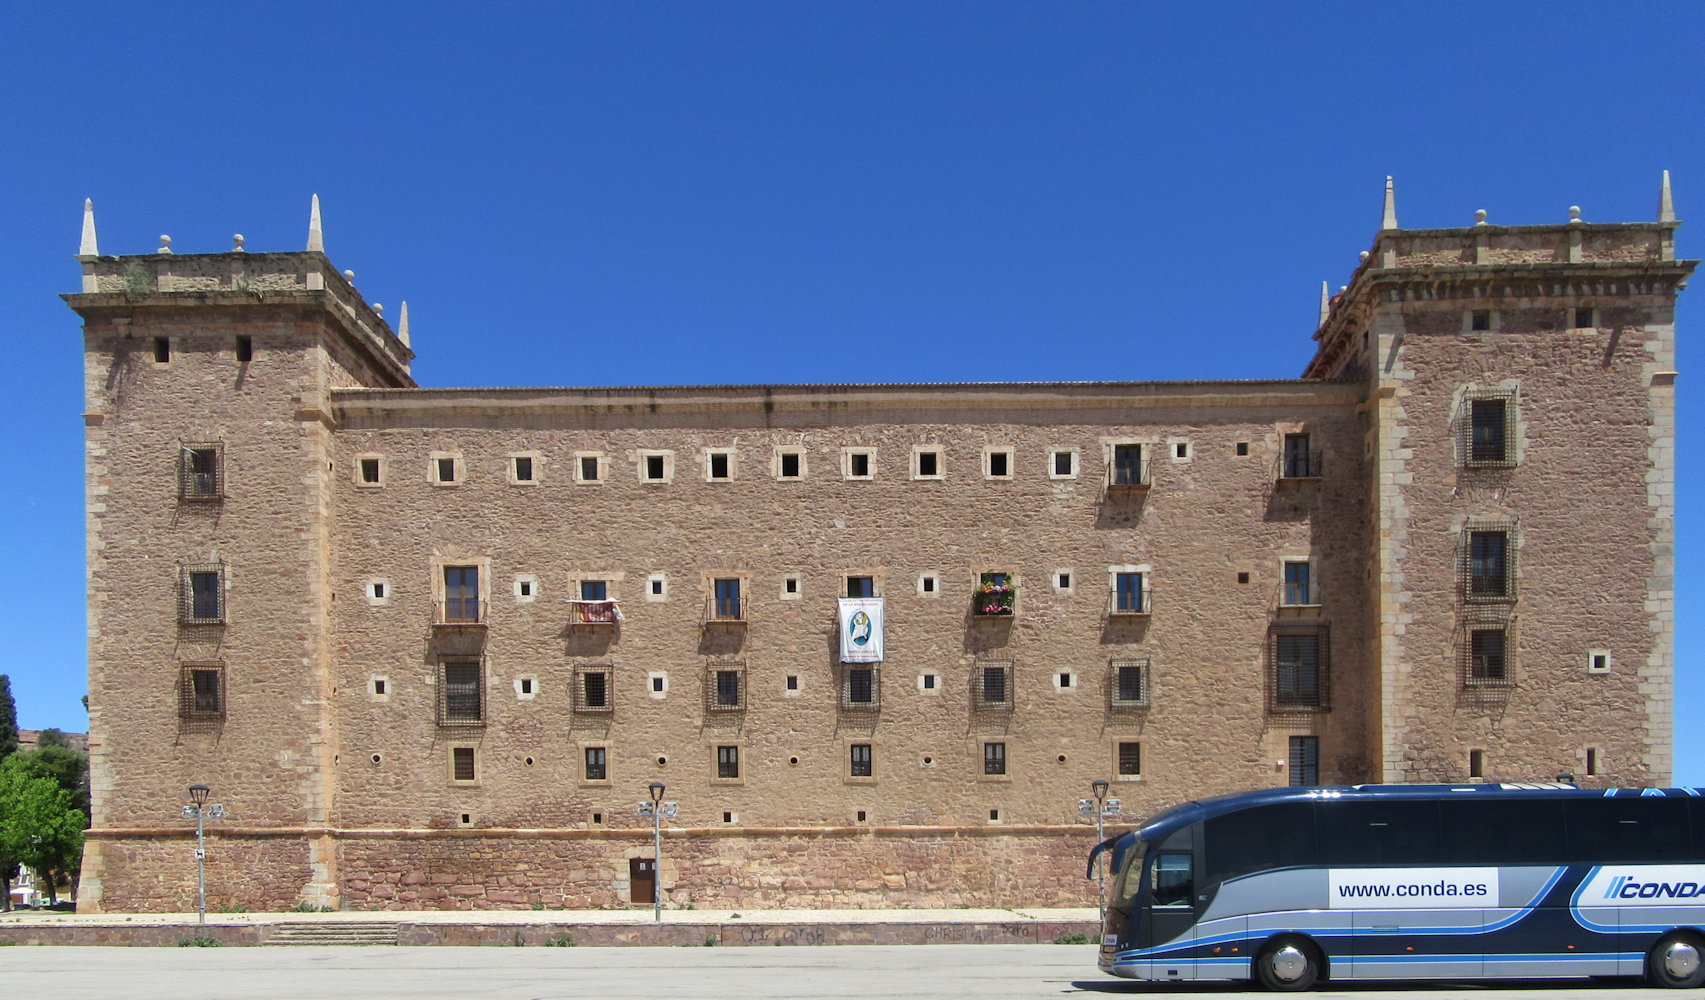 Kloster der Mercedarier in El Puig de Santa Maria mit dem mächtigen, ab 1300 erbauten Gebäude, noch immer ein wichtiger Wallfahrtsort